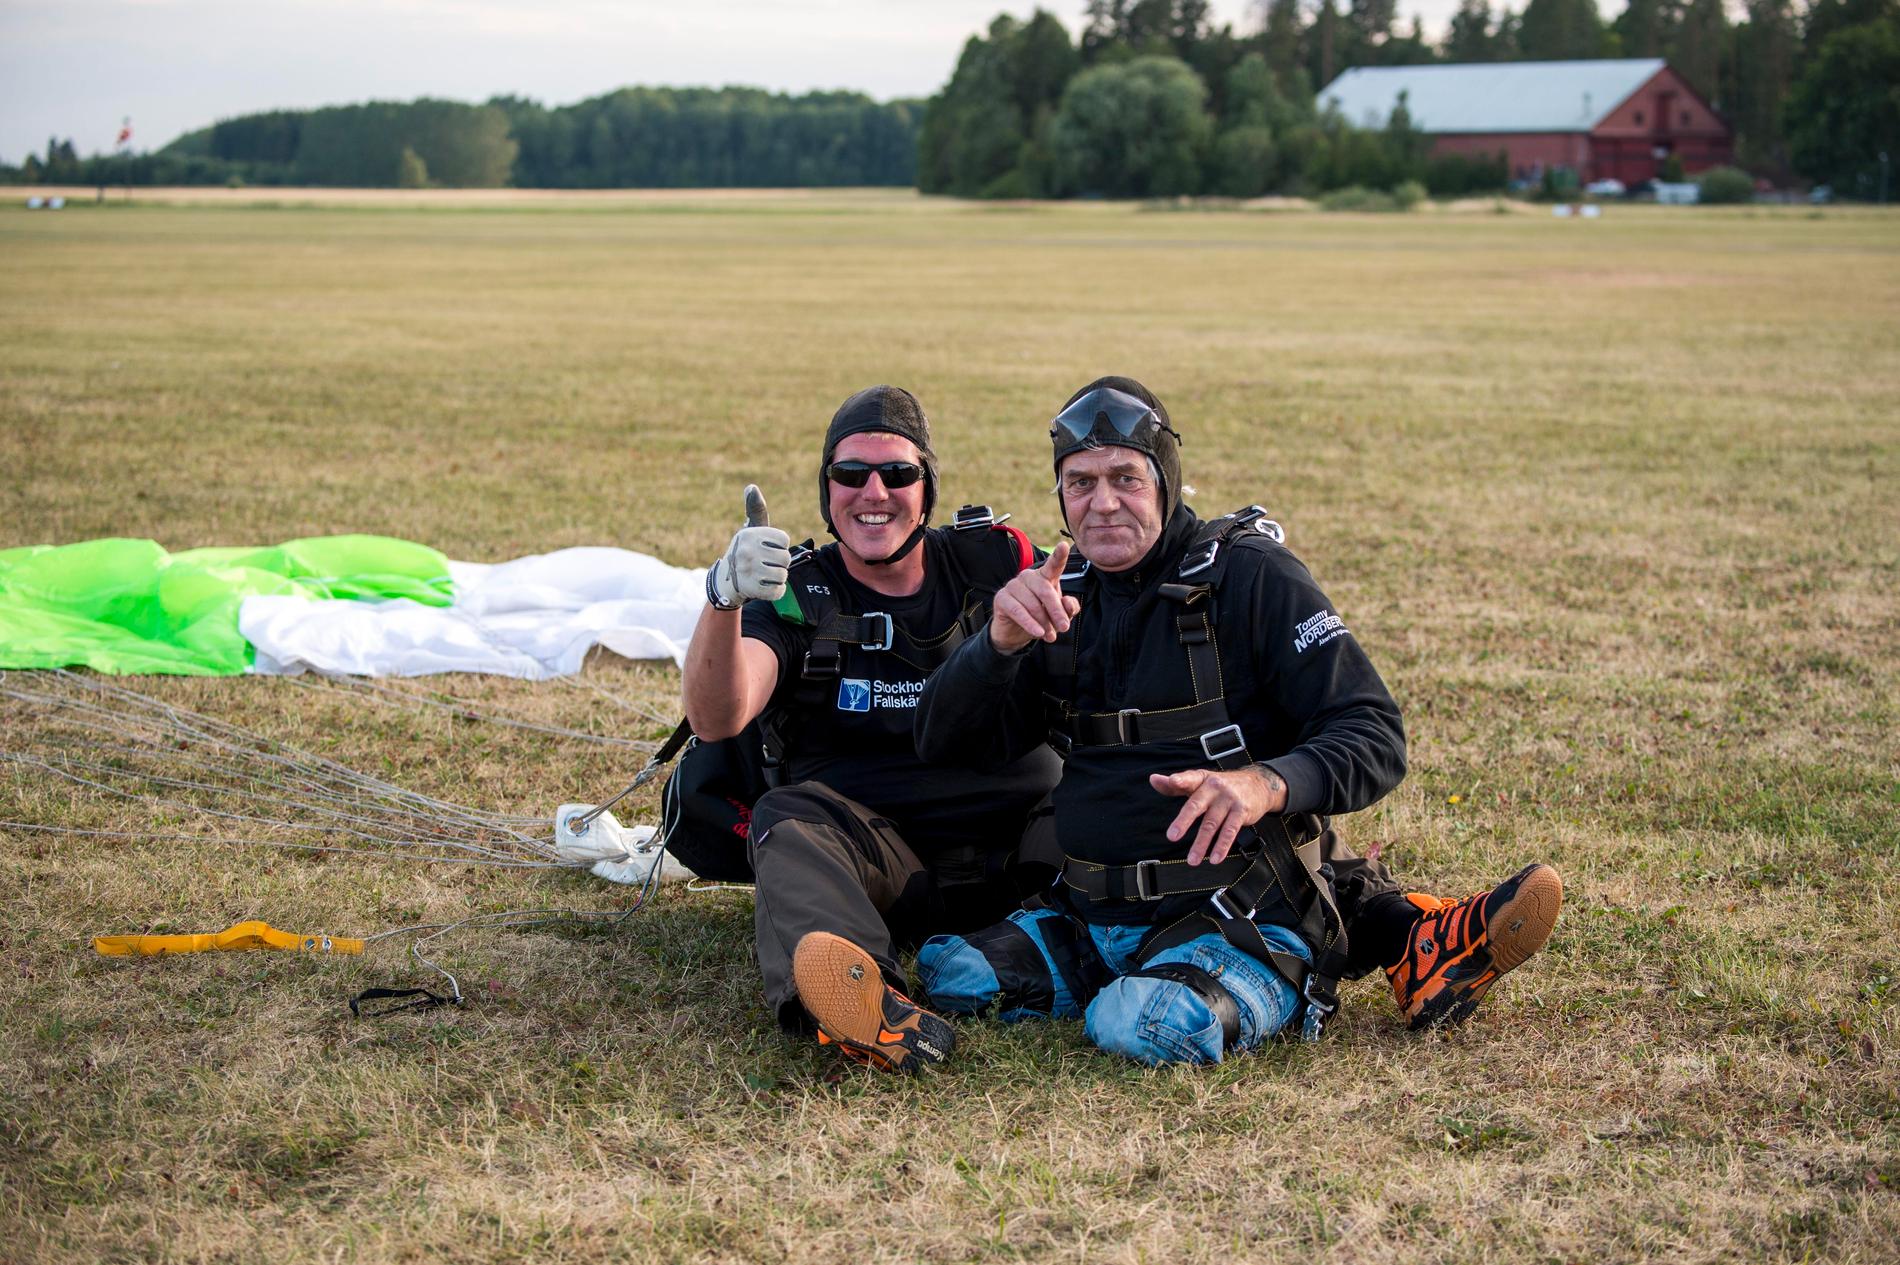 FINGRET I LUFTEN Hoppet gick bra – och landningen. Två nöjda män i gröngräset efter fallskärmshoppet.